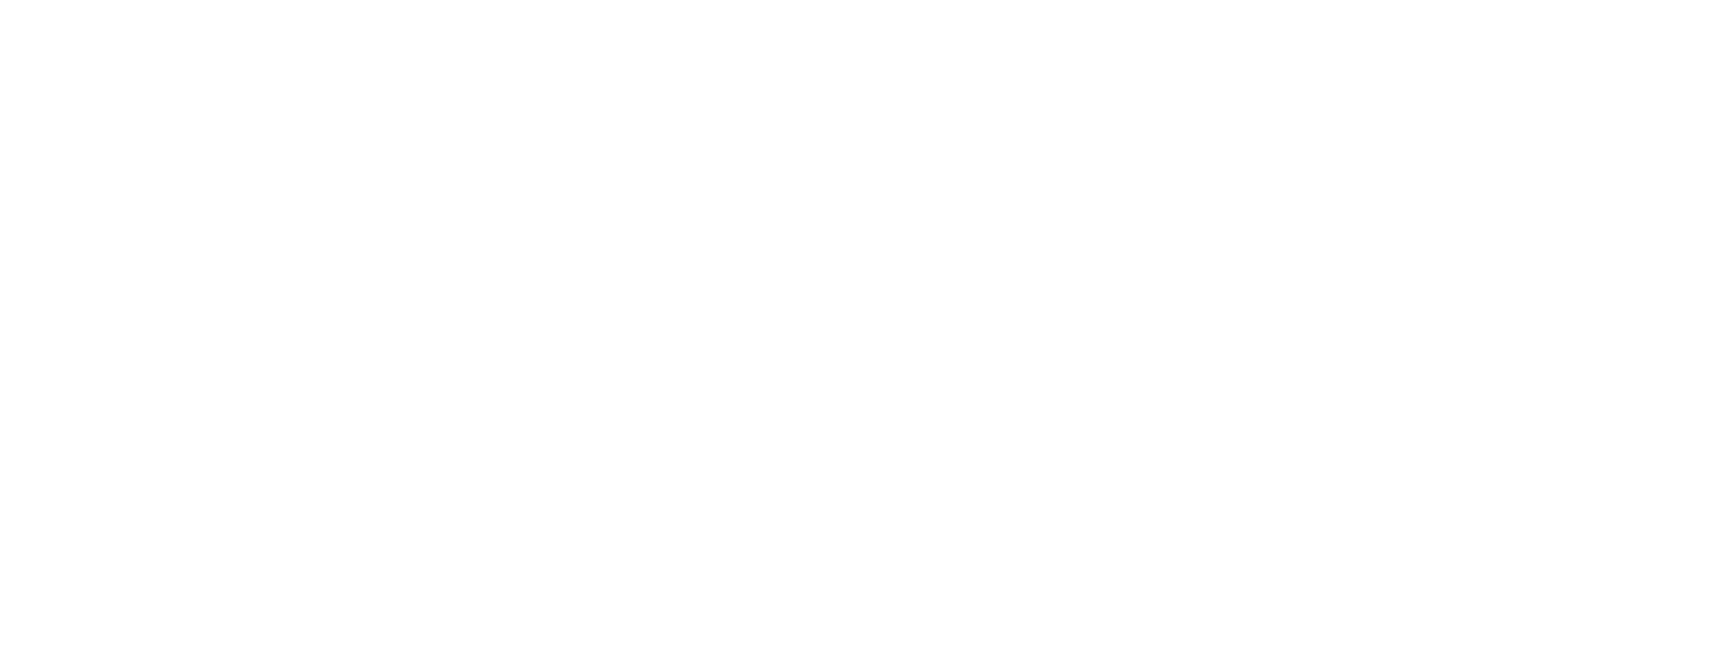 Sai Kumar Kadiam